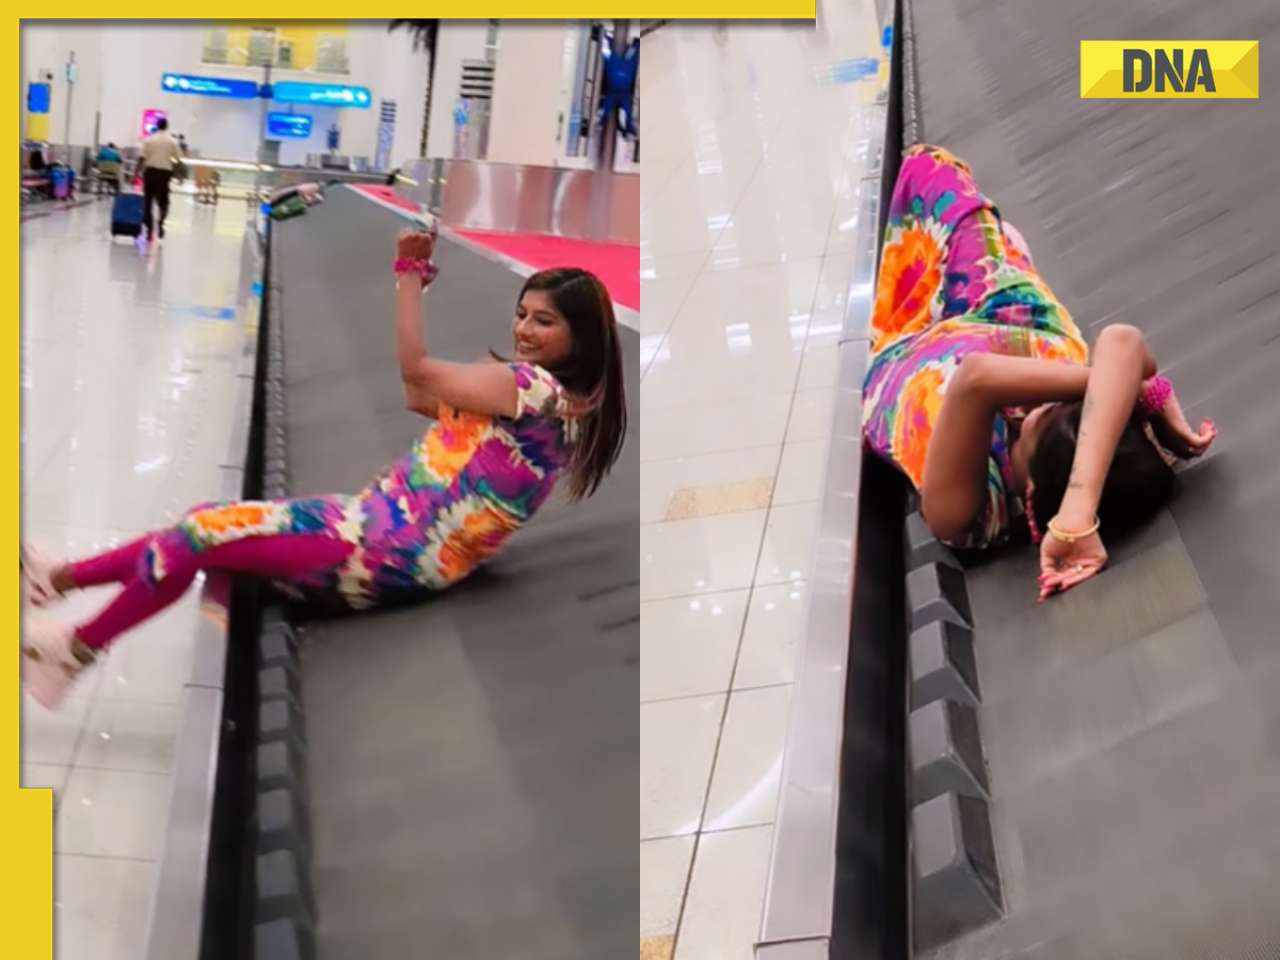 Social media influencer faces backlash over airport conveyor belt stunt, video goes viral